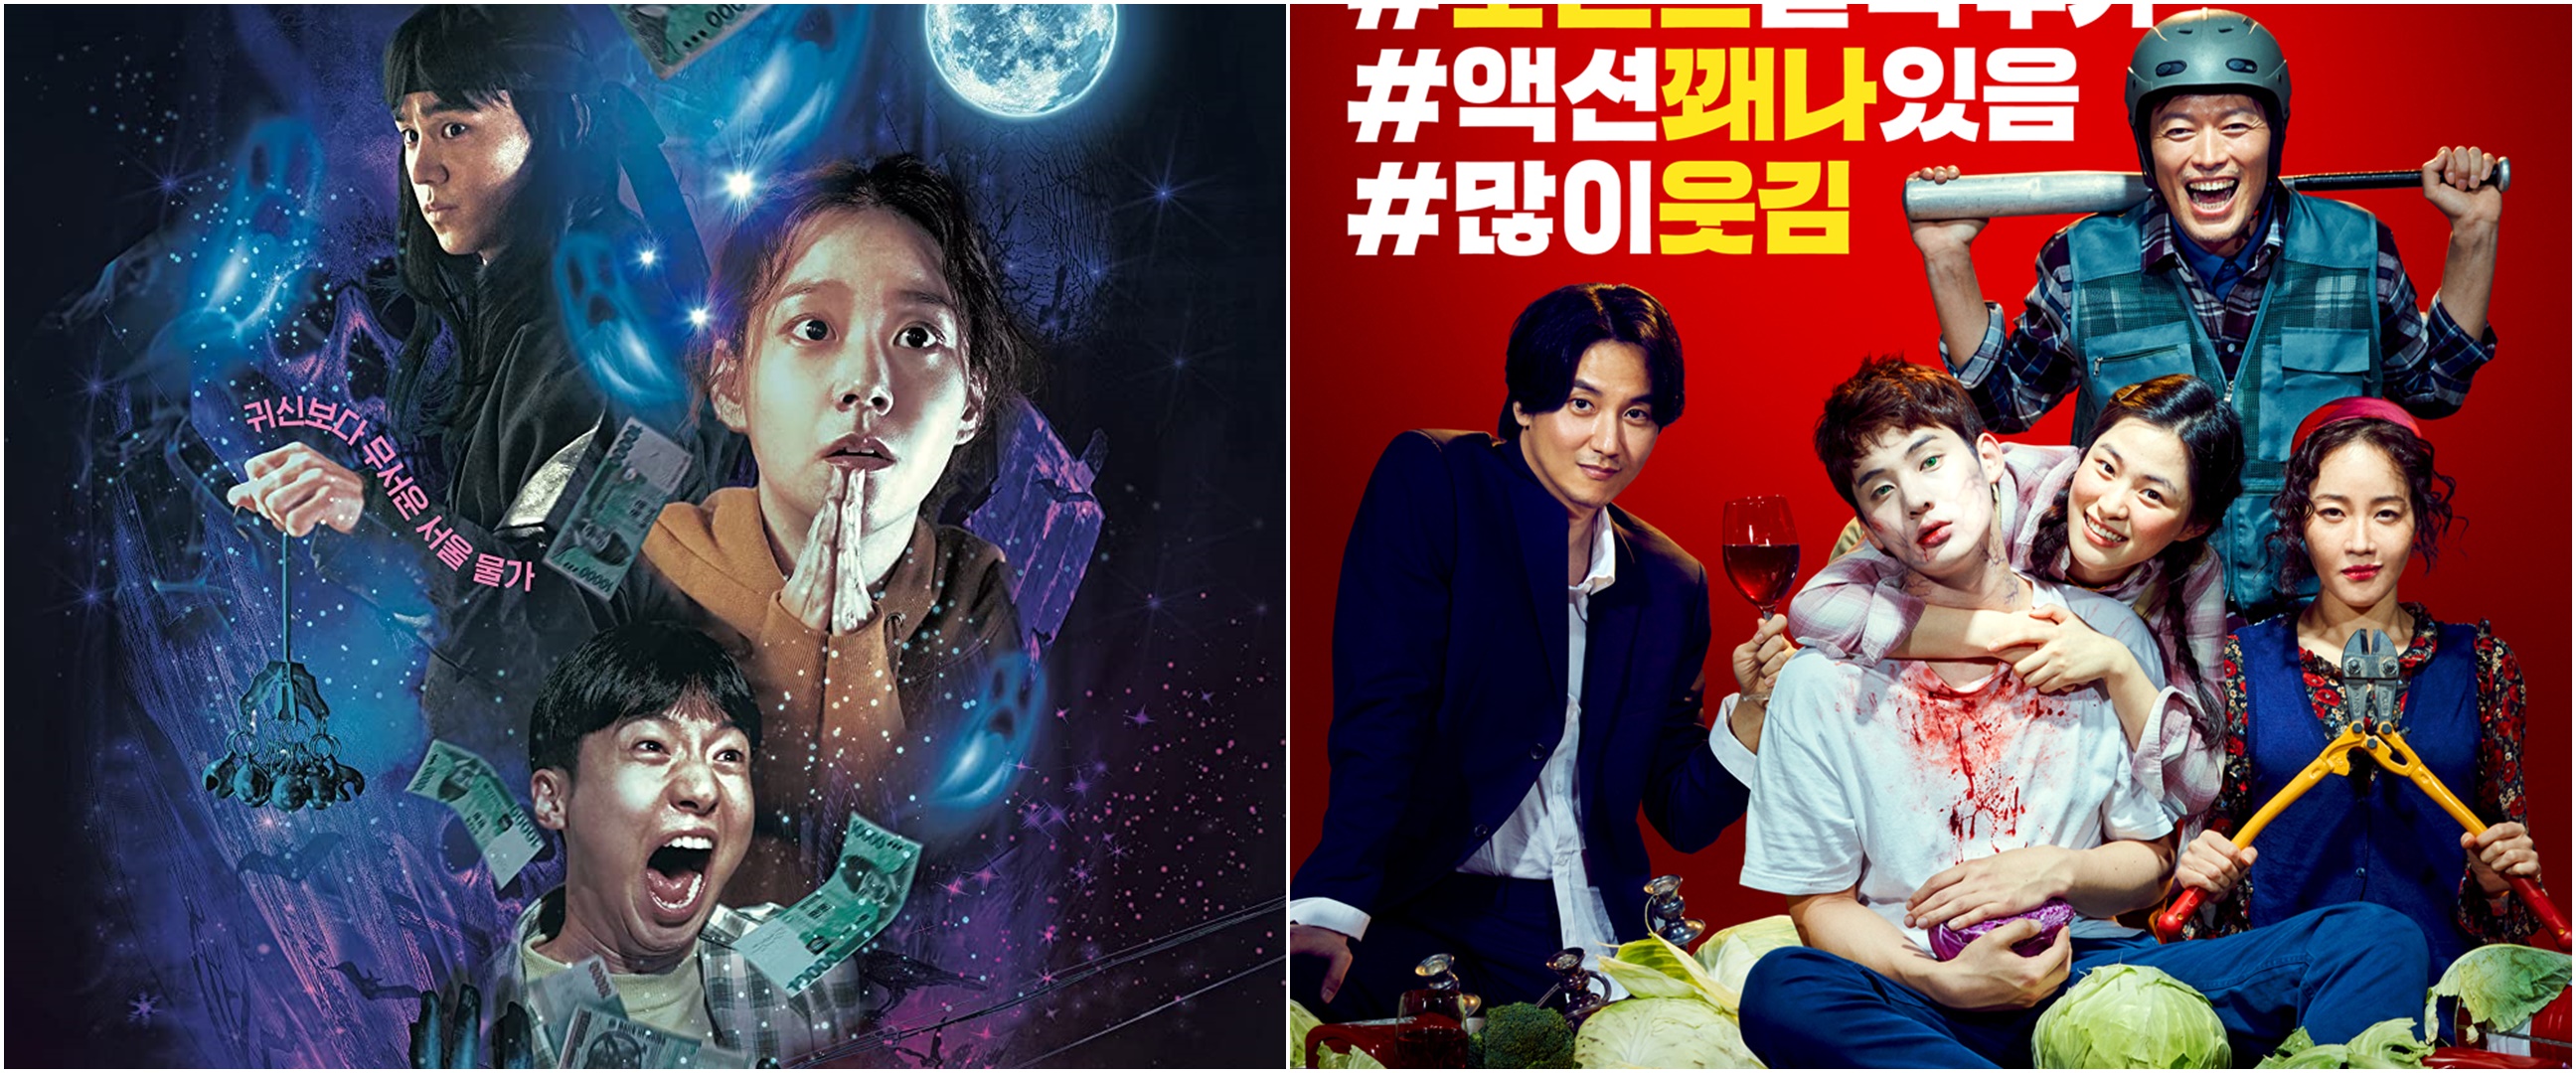 7 Film Korea horor komedi, penuh cerita menyeramkan dan adegan kocak